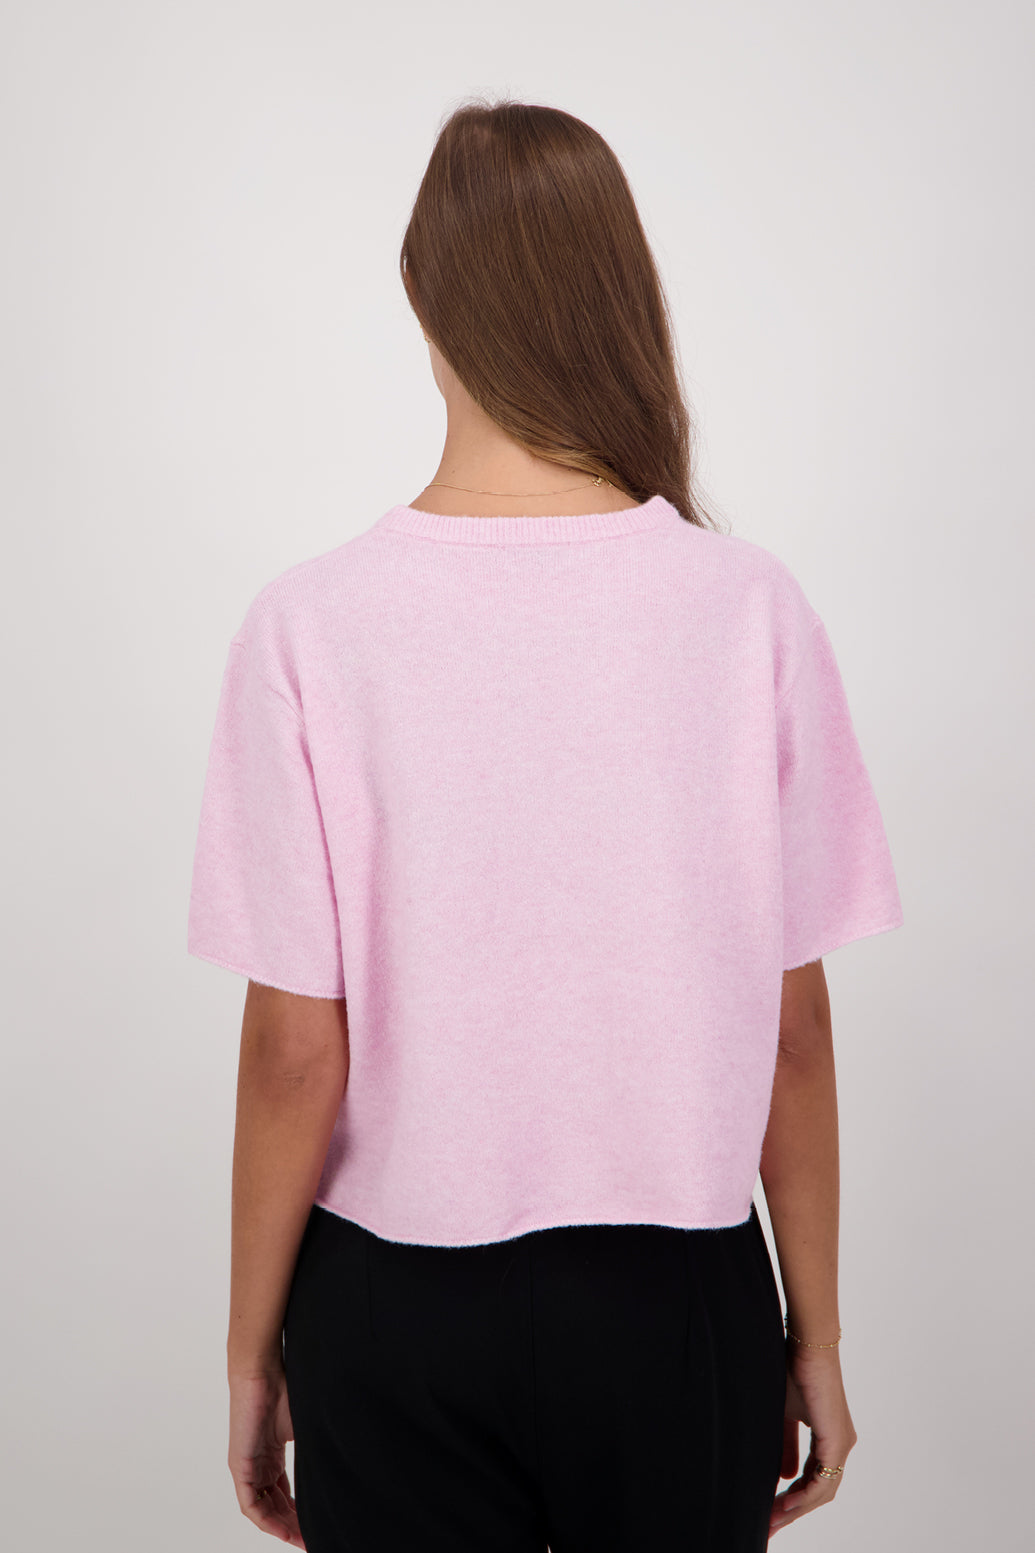 Dapper Wool Blend Short Sleeve Top/T-Shirt - Pale Pink